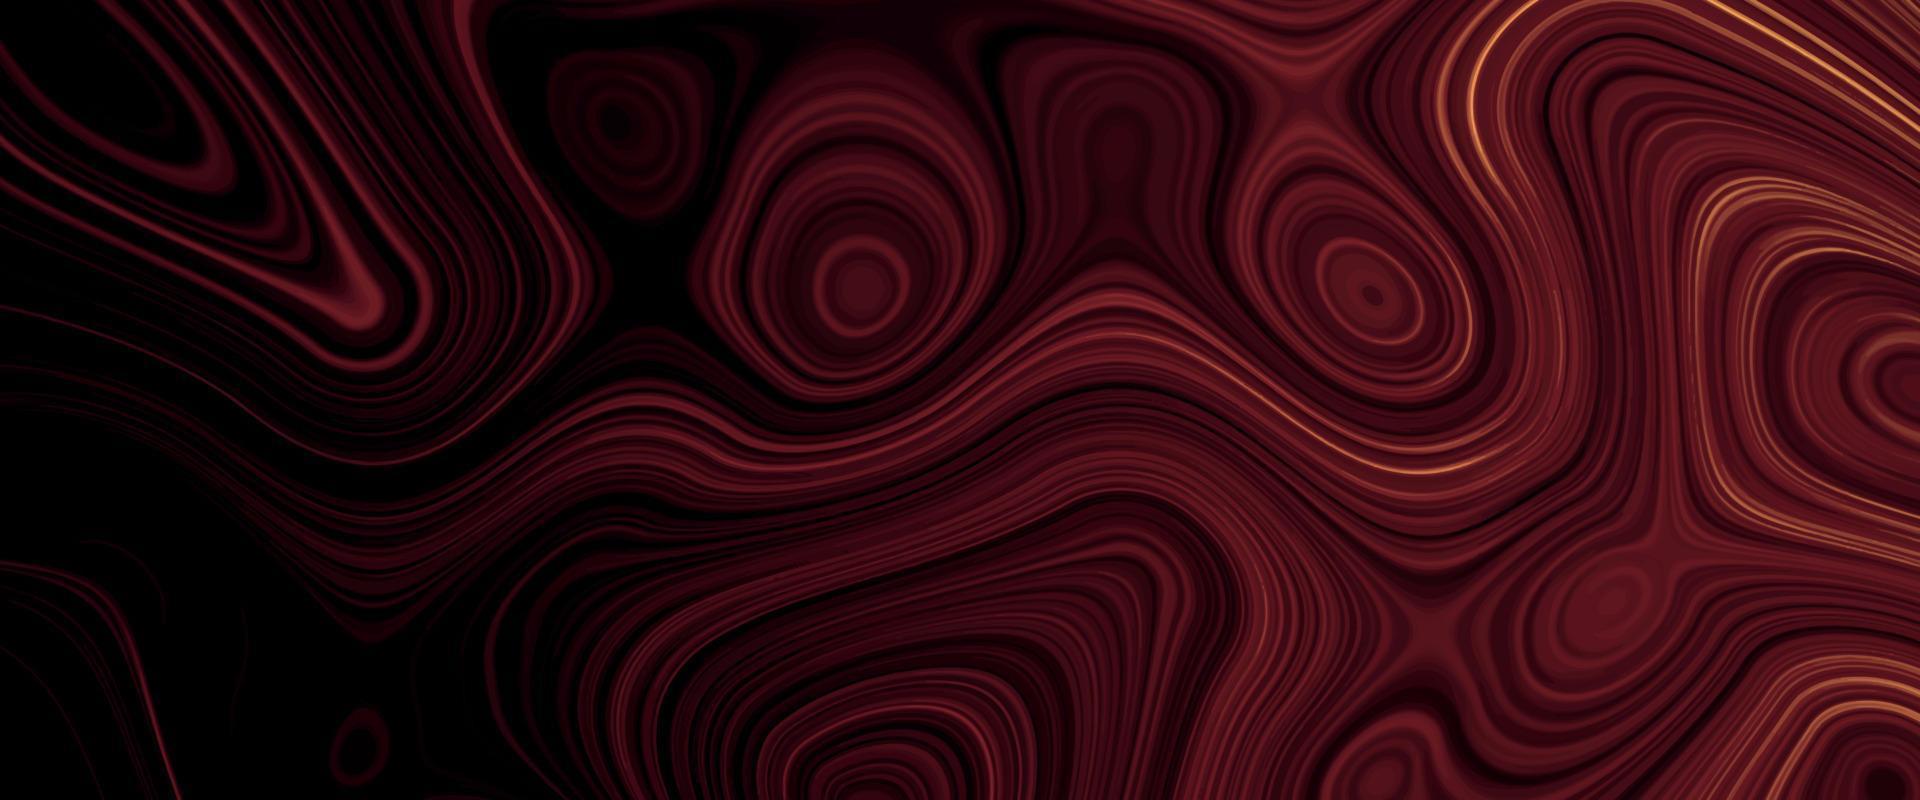 svart, röd satin flytande bakgrund. digital konst abstrakt mönster. abstrakt flytande metall närbild design. slät elegant svart satin textur. lyxig marmor bakgrund design. vektor